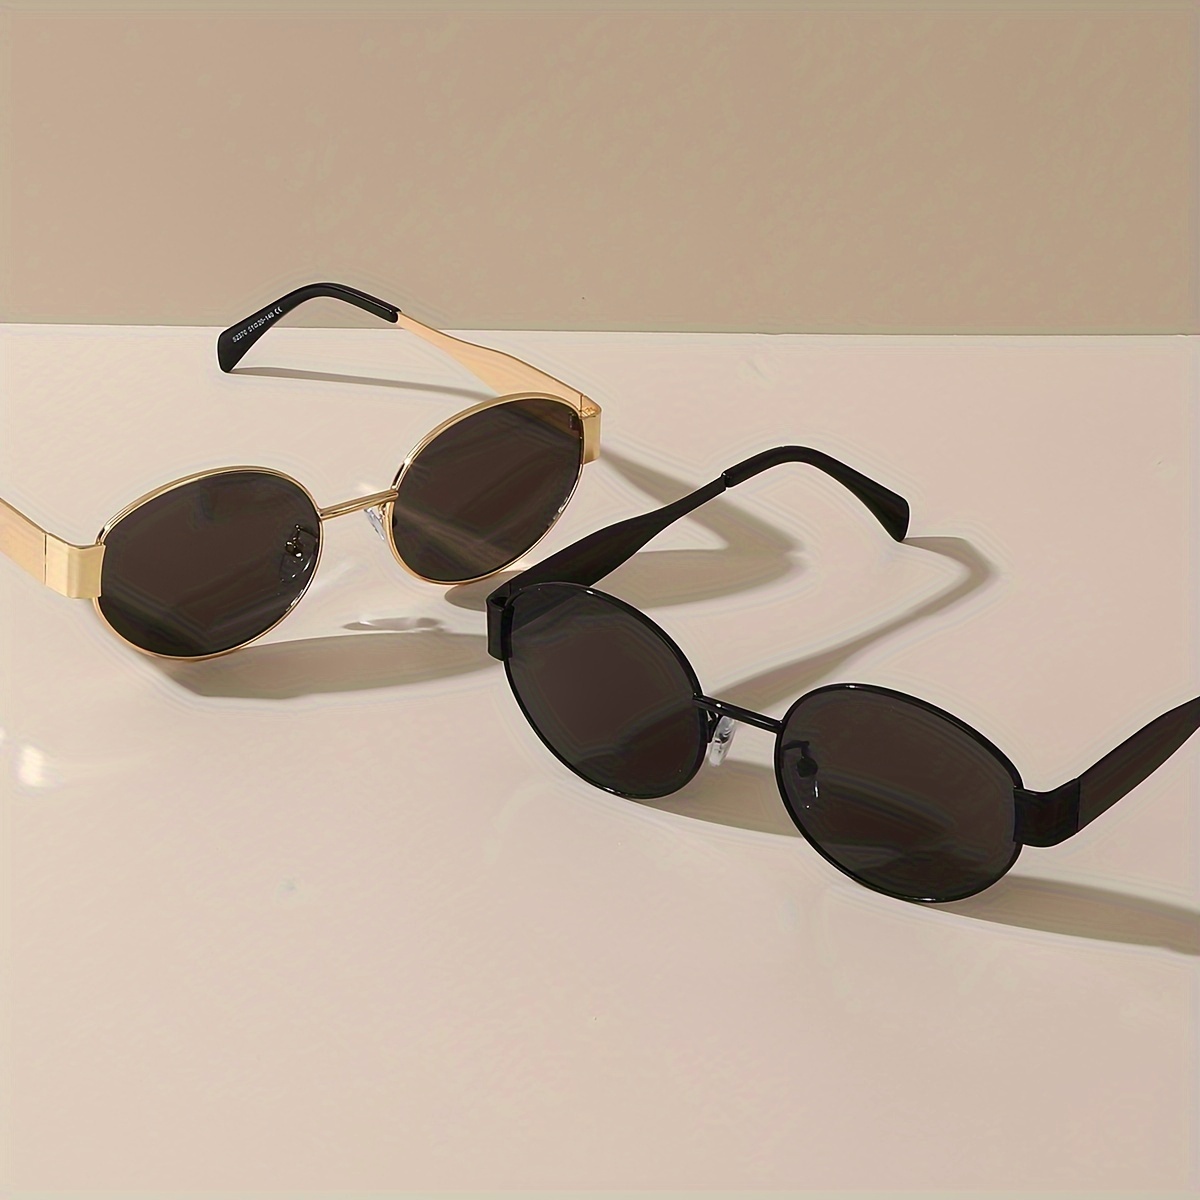 

2pcs Lunettes de soleil ovales rétro à la mode pour hommes et femmes, lunettes de soleil classiques pour la conduite et les voyages.